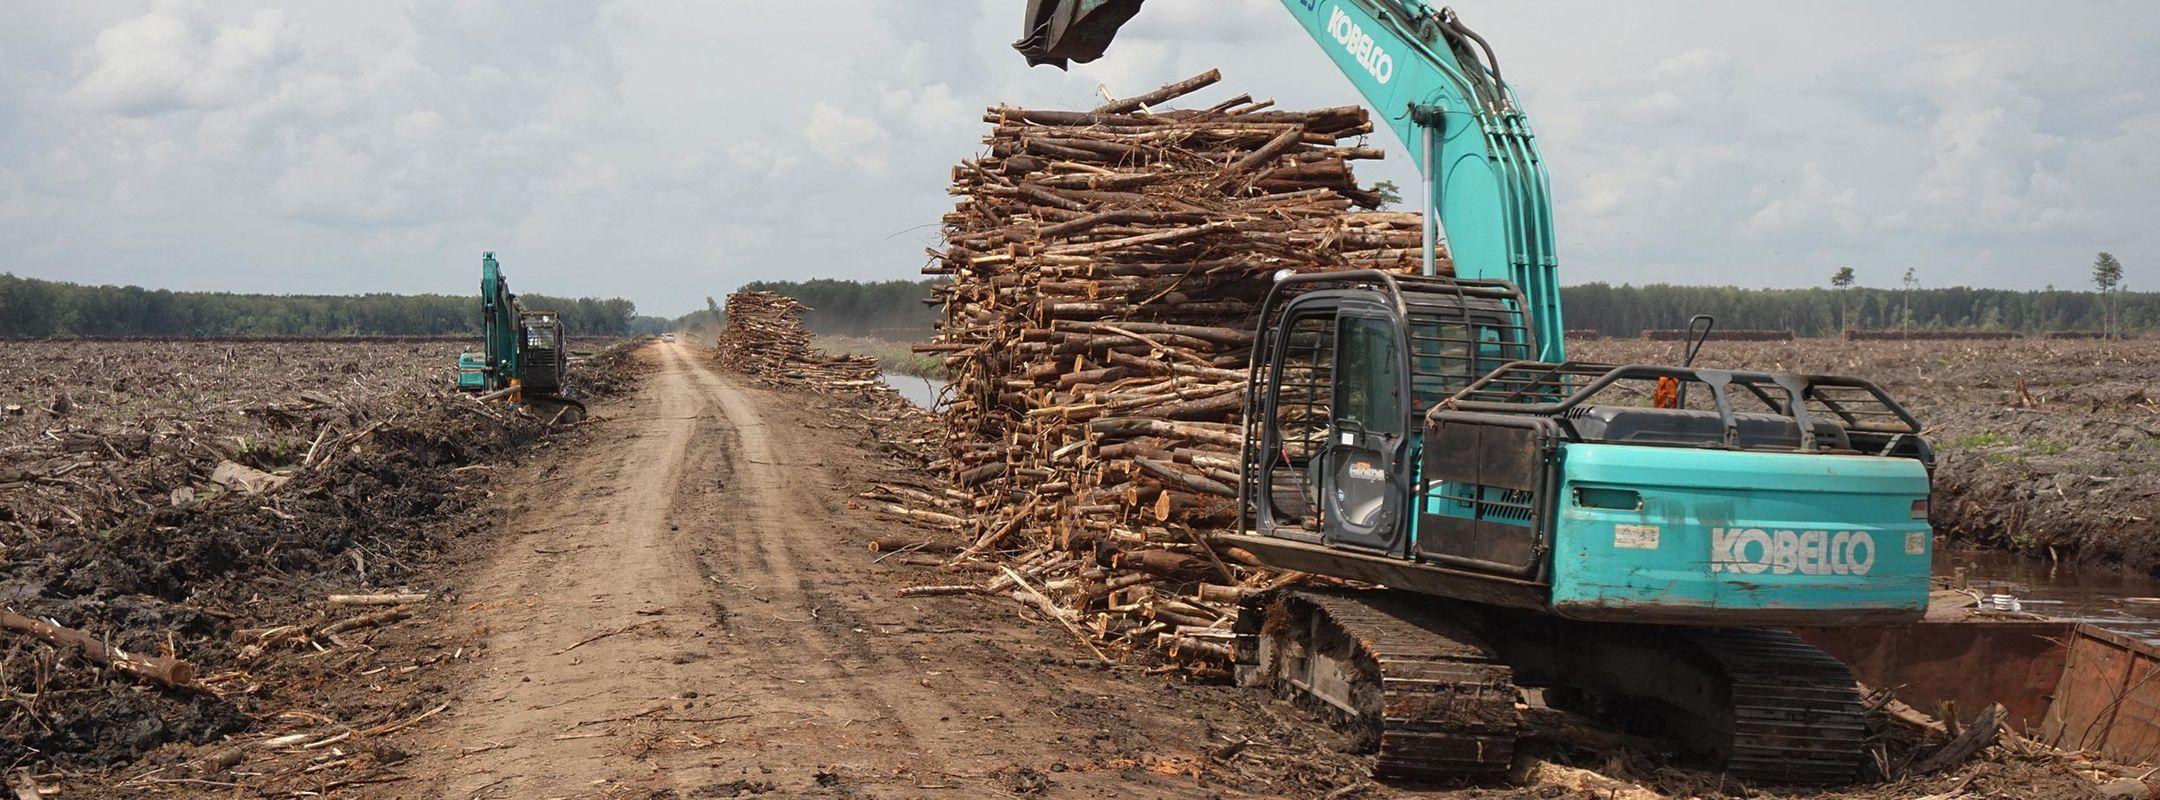 Deforestation in West Kalimantan